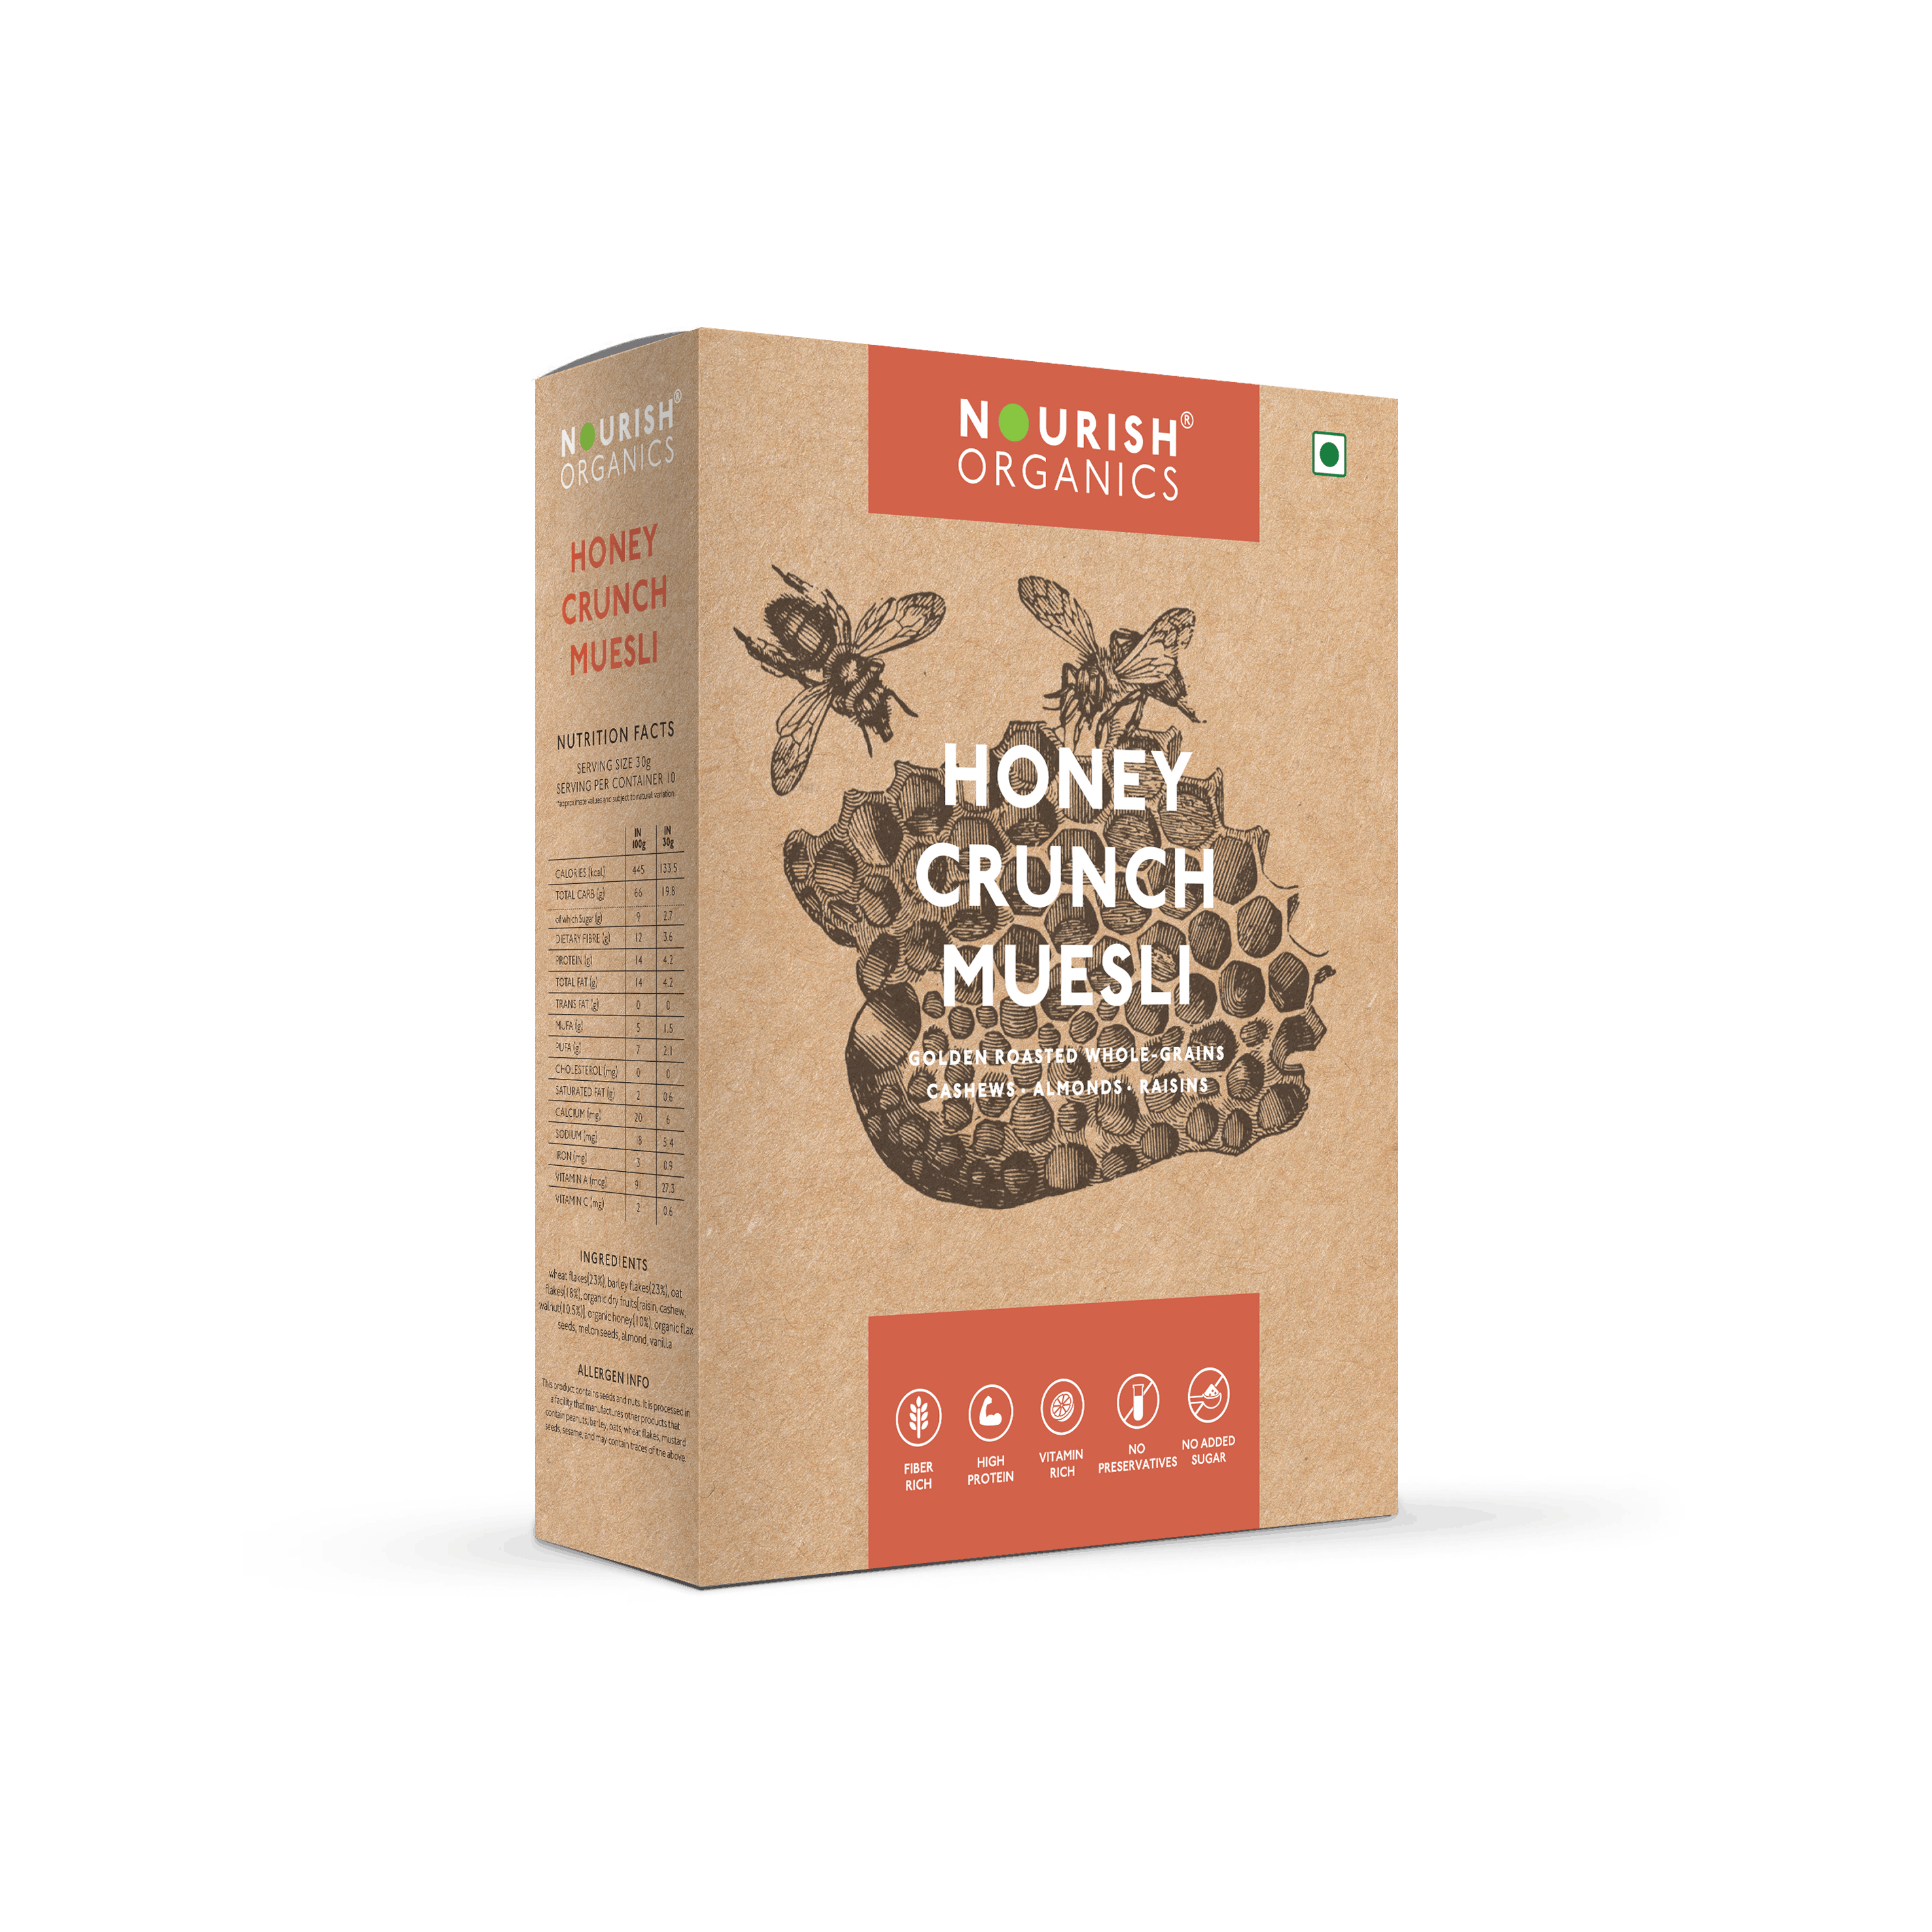 Nourish Organics Honey Crunch Muesli Image